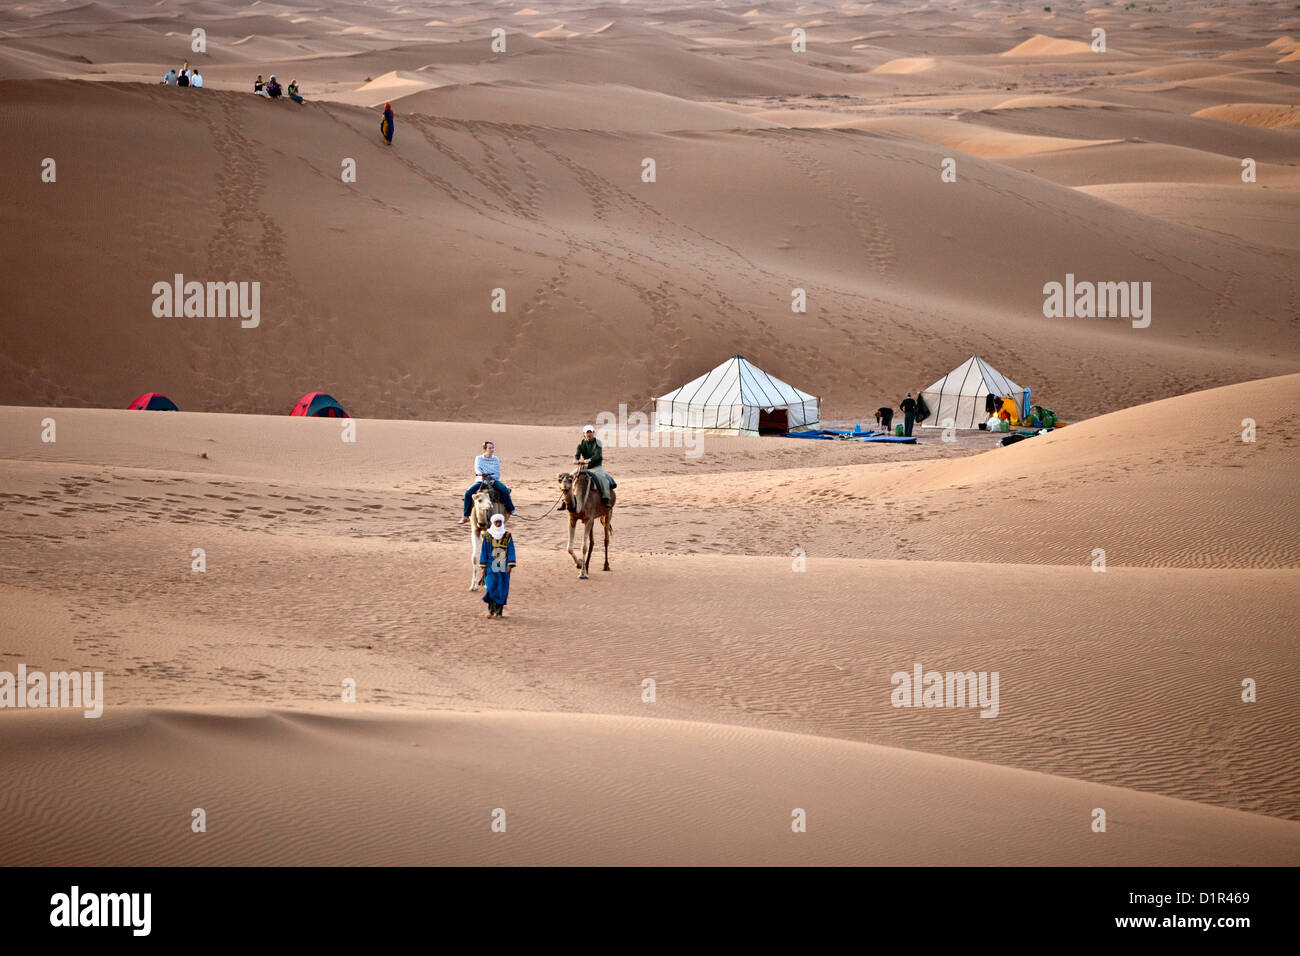 Le Maroc, M'Hamid, Erg Chigaga dunes de sable. Désert du Sahara. Chameliers, caravane de chameaux et les touristes quitter le camp, bivouac. Banque D'Images